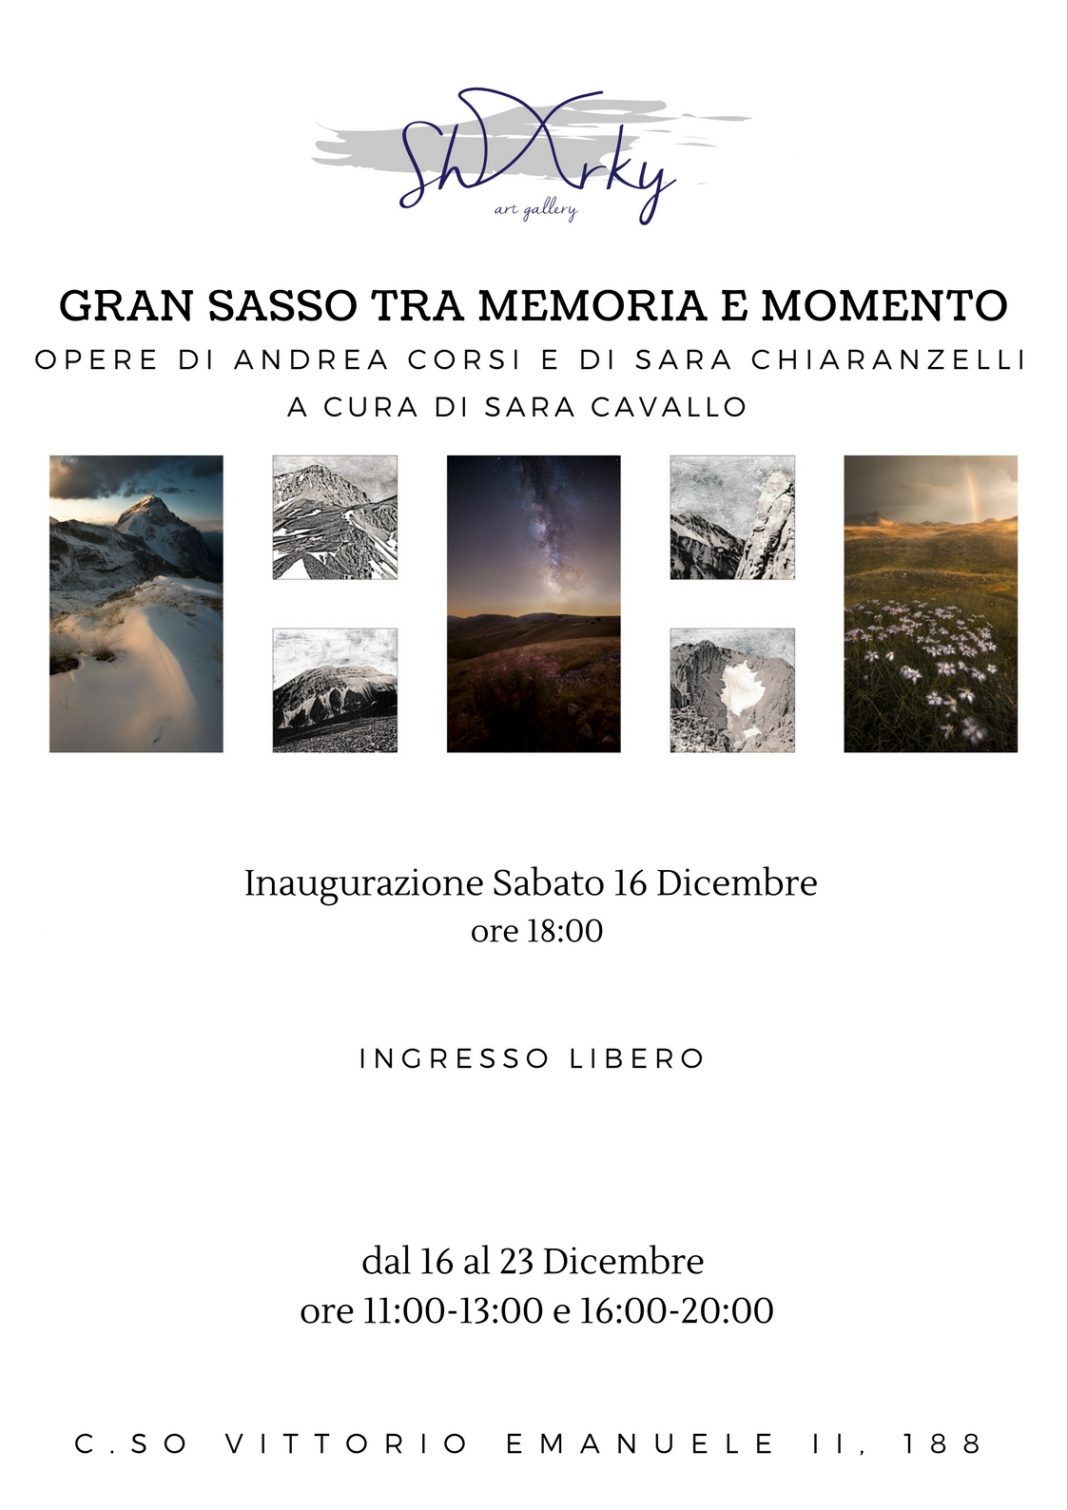 Andrea Corsi / Sara Chiaranzelli – Gran Sasso tra memoria e momentohttps://www.exibart.com/repository/media/eventi/2017/12/andrea-corsi-sara-chiaranzelli-8211-gran-sasso-tra-memoria-e-momento-1068x1510.jpg